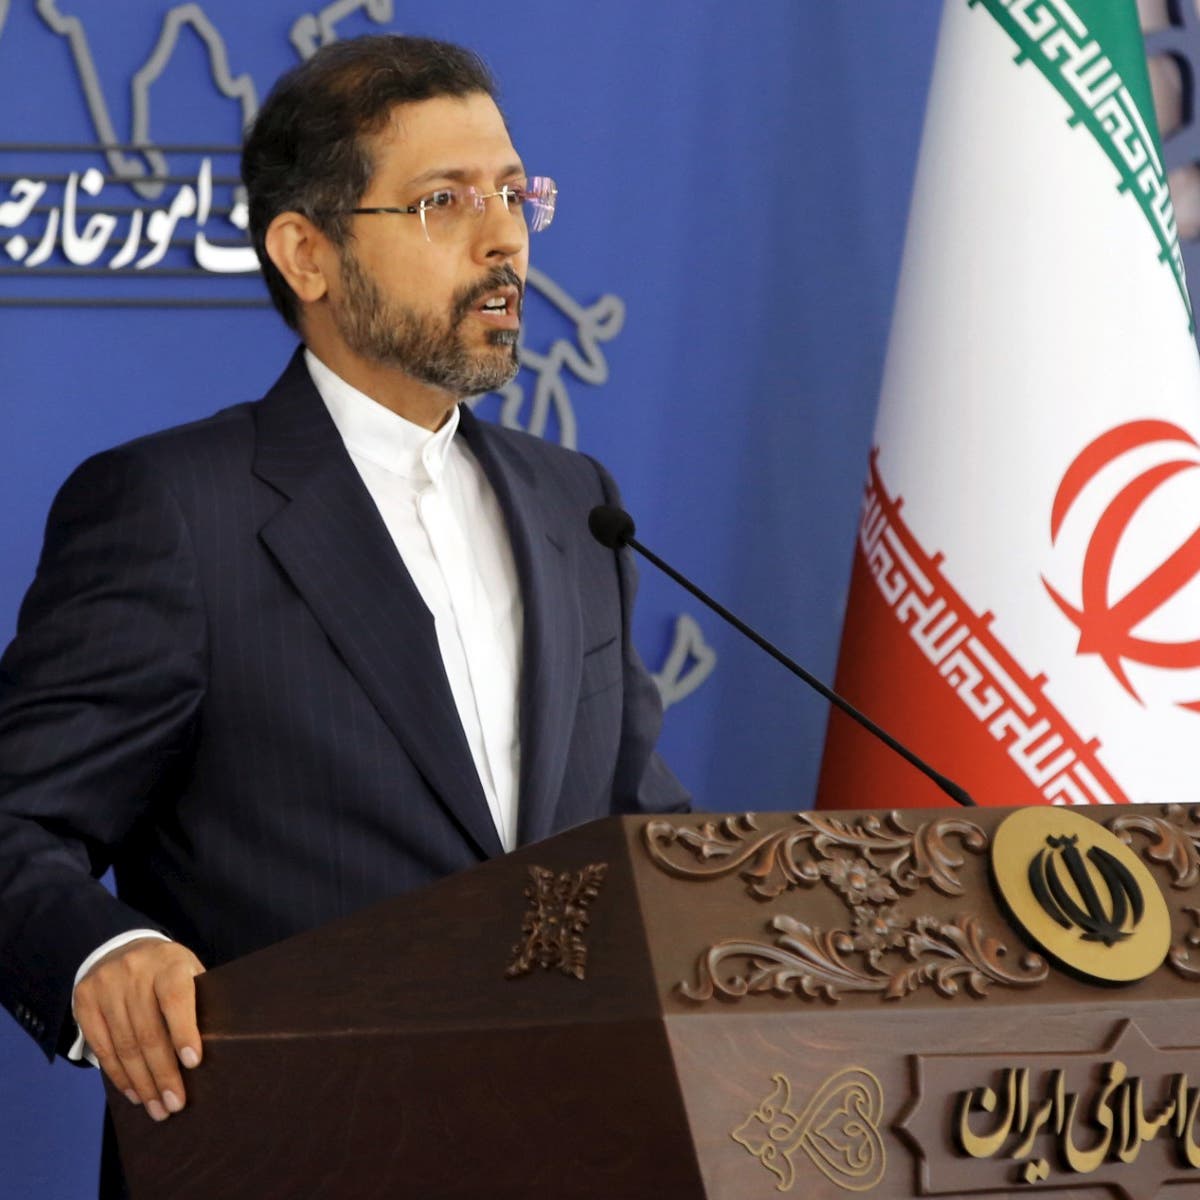 طهران: على الغرب التنازل عن أي مطلب خارج الاتفاق النووي